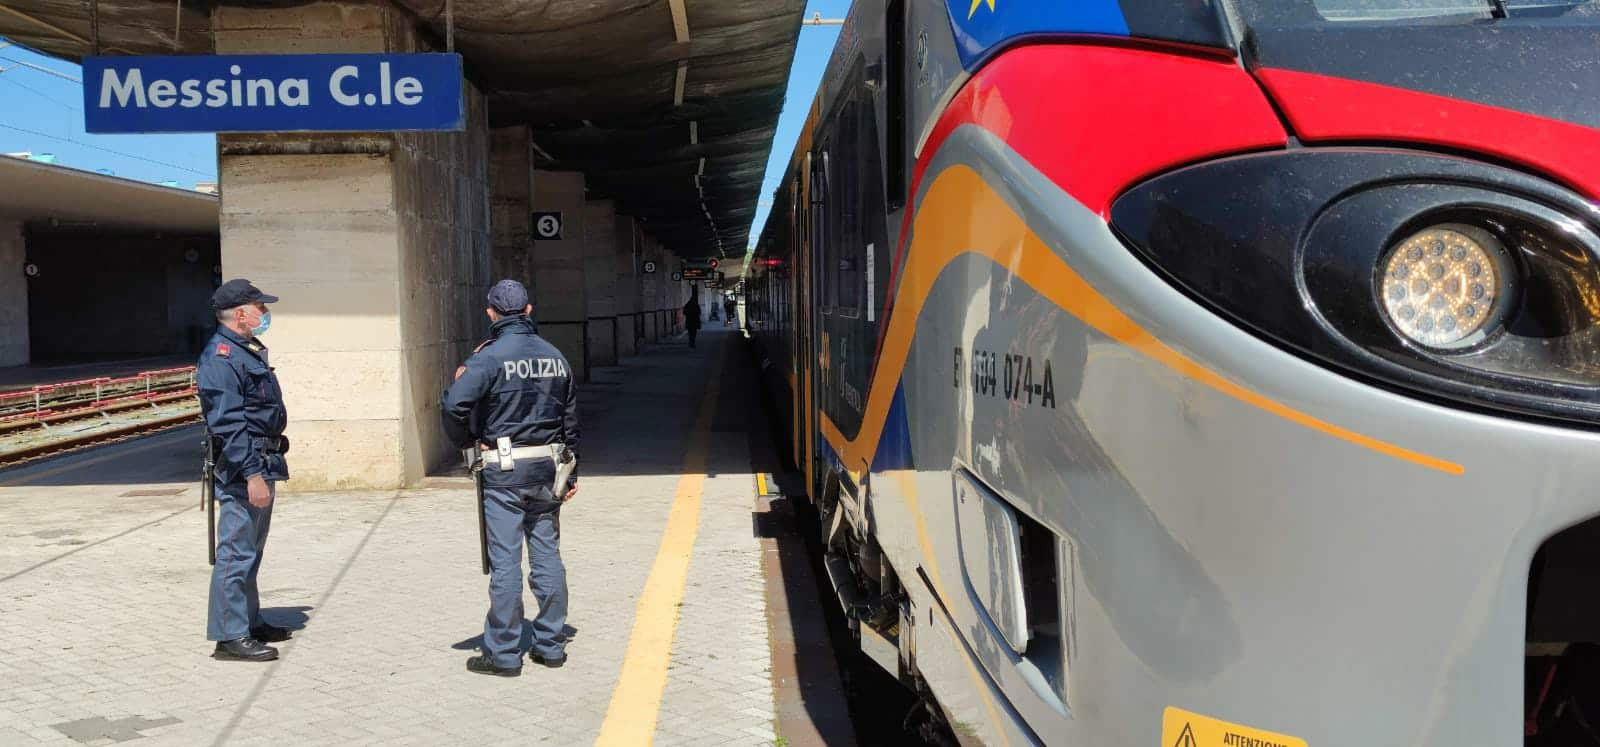 Paura alla Stazione, ragazze molestate sul tram fuggono terrorizzate in cerca di aiuto: arrestato 59enne